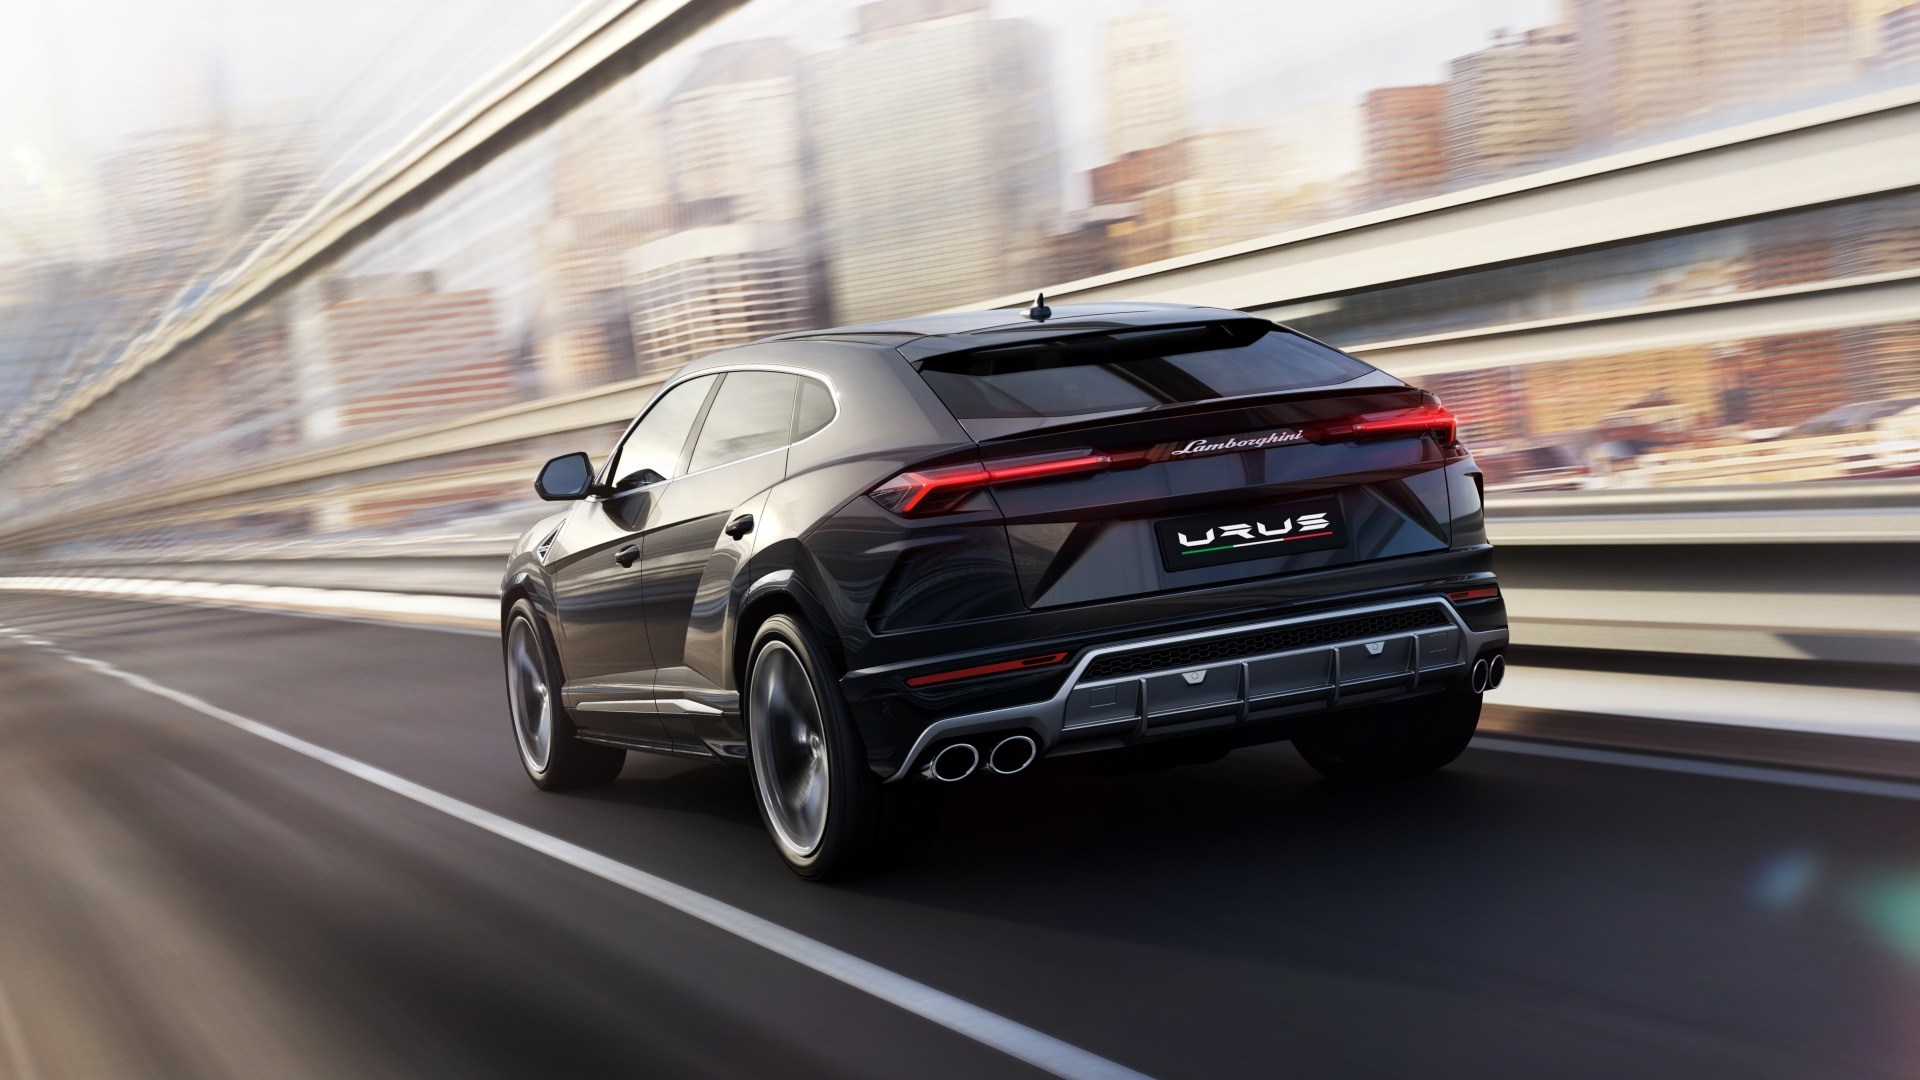 El Lamborghini Urus podría recibir una versión más potente y prestacional